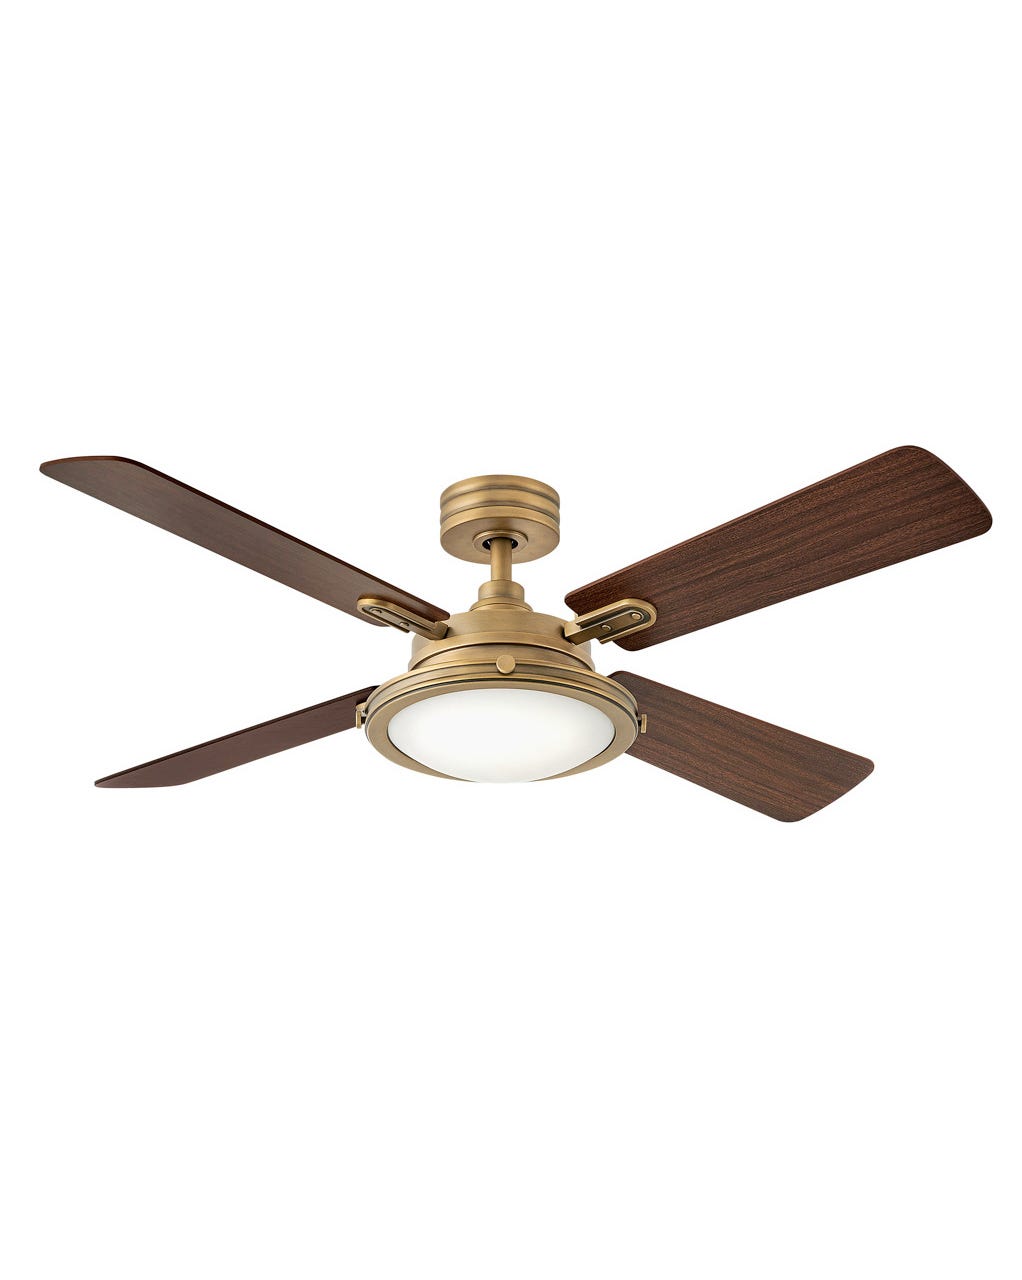 Hinkley Collier LED Fan